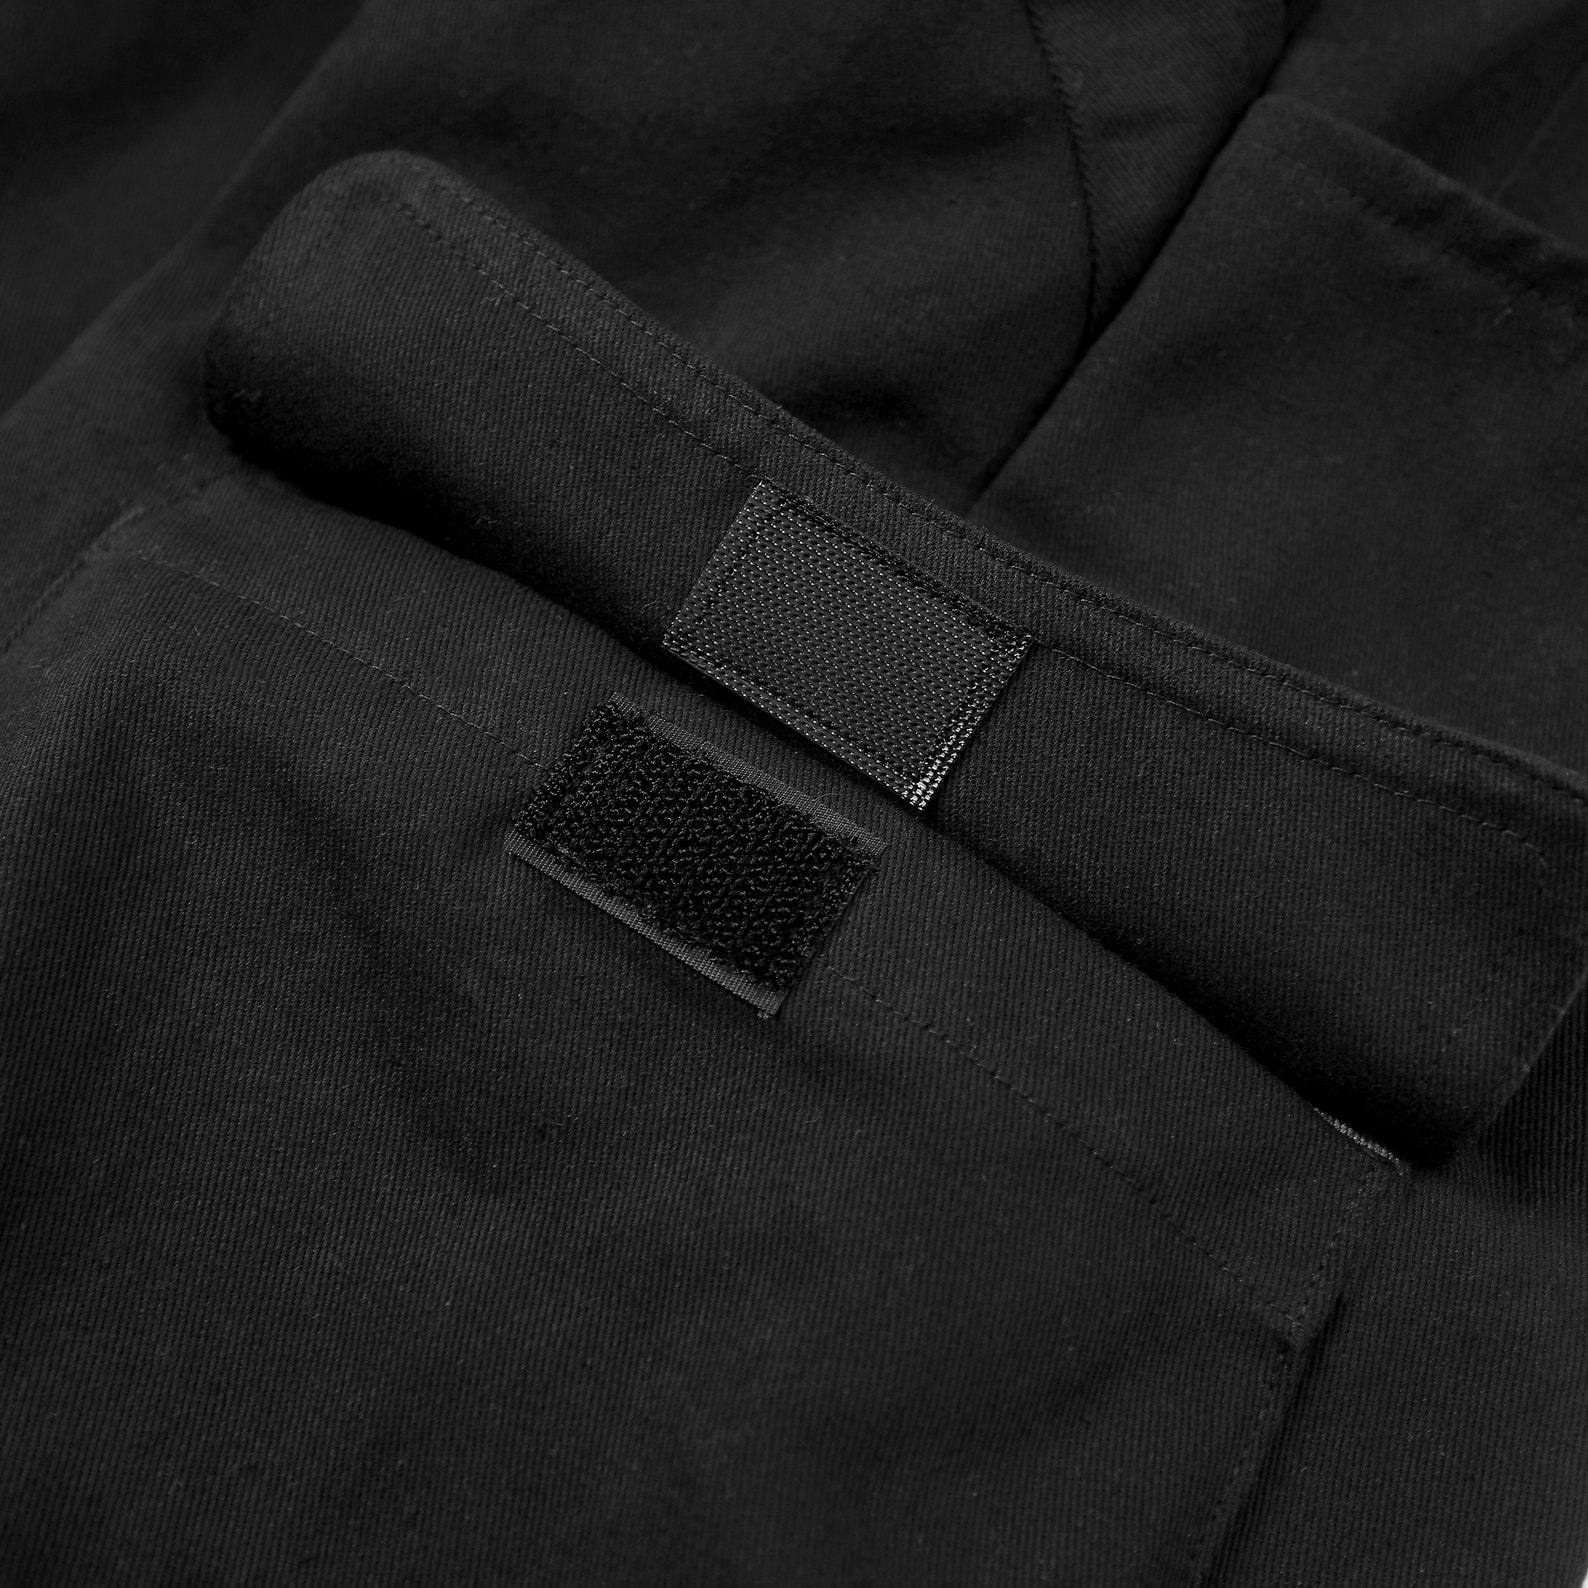 Cyberpunk Black Cargo Pants for Men Streetwear Fashion - Etsy